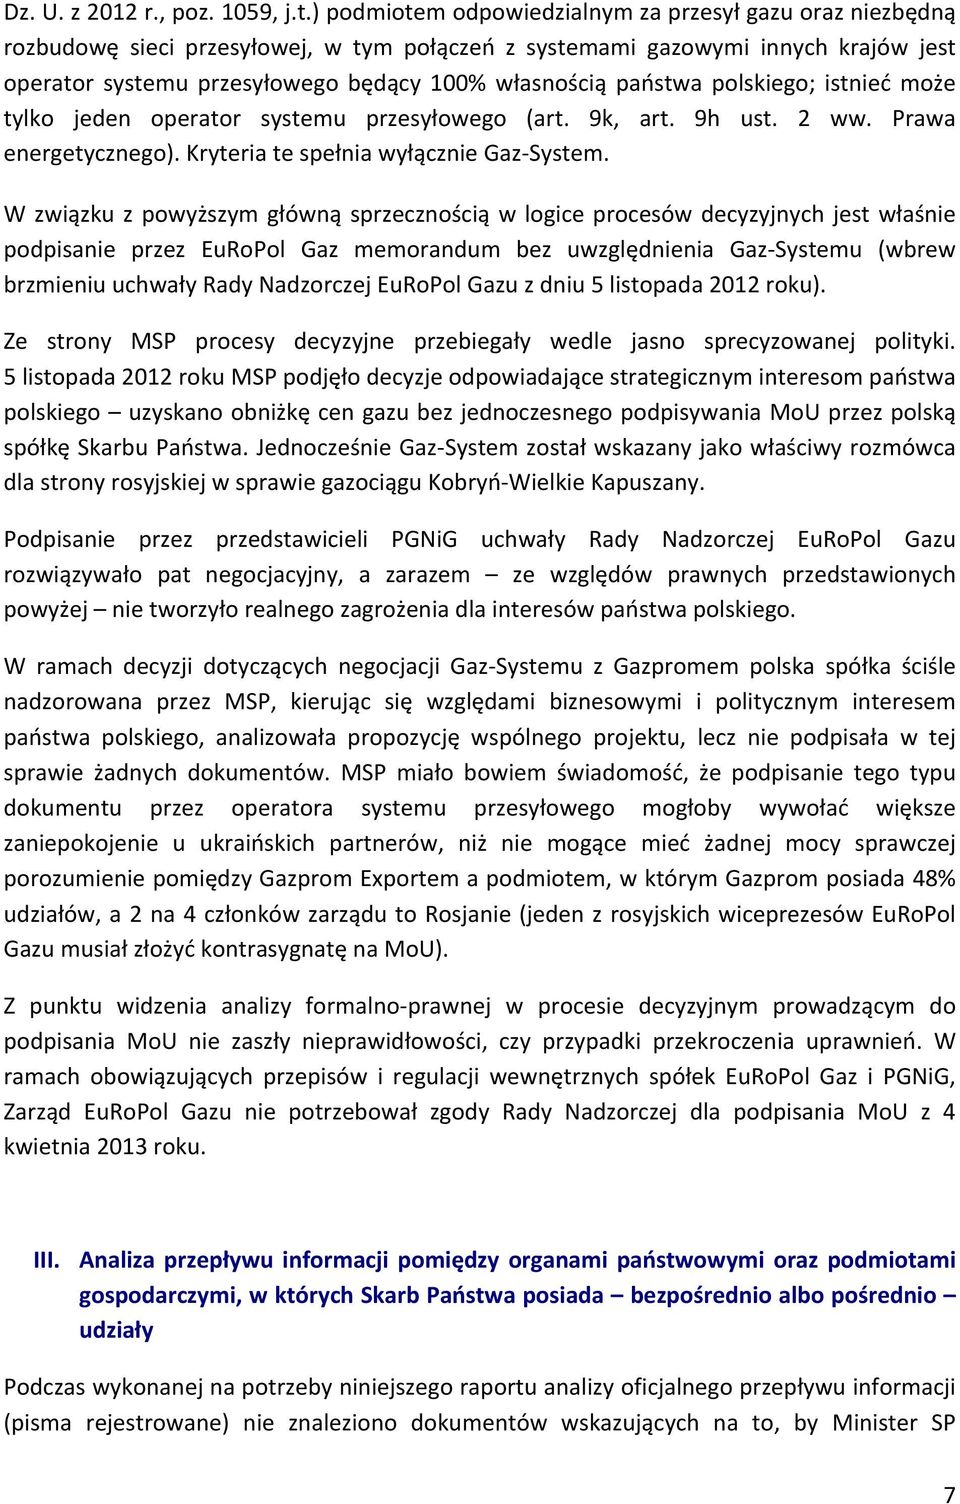 państwa polskiego; istnieć może tylko jeden operator systemu przesyłowego (art. 9k, art. 9h ust. 2 ww. Prawa energetycznego). Kryteria te spełnia wyłącznie Gaz- System.